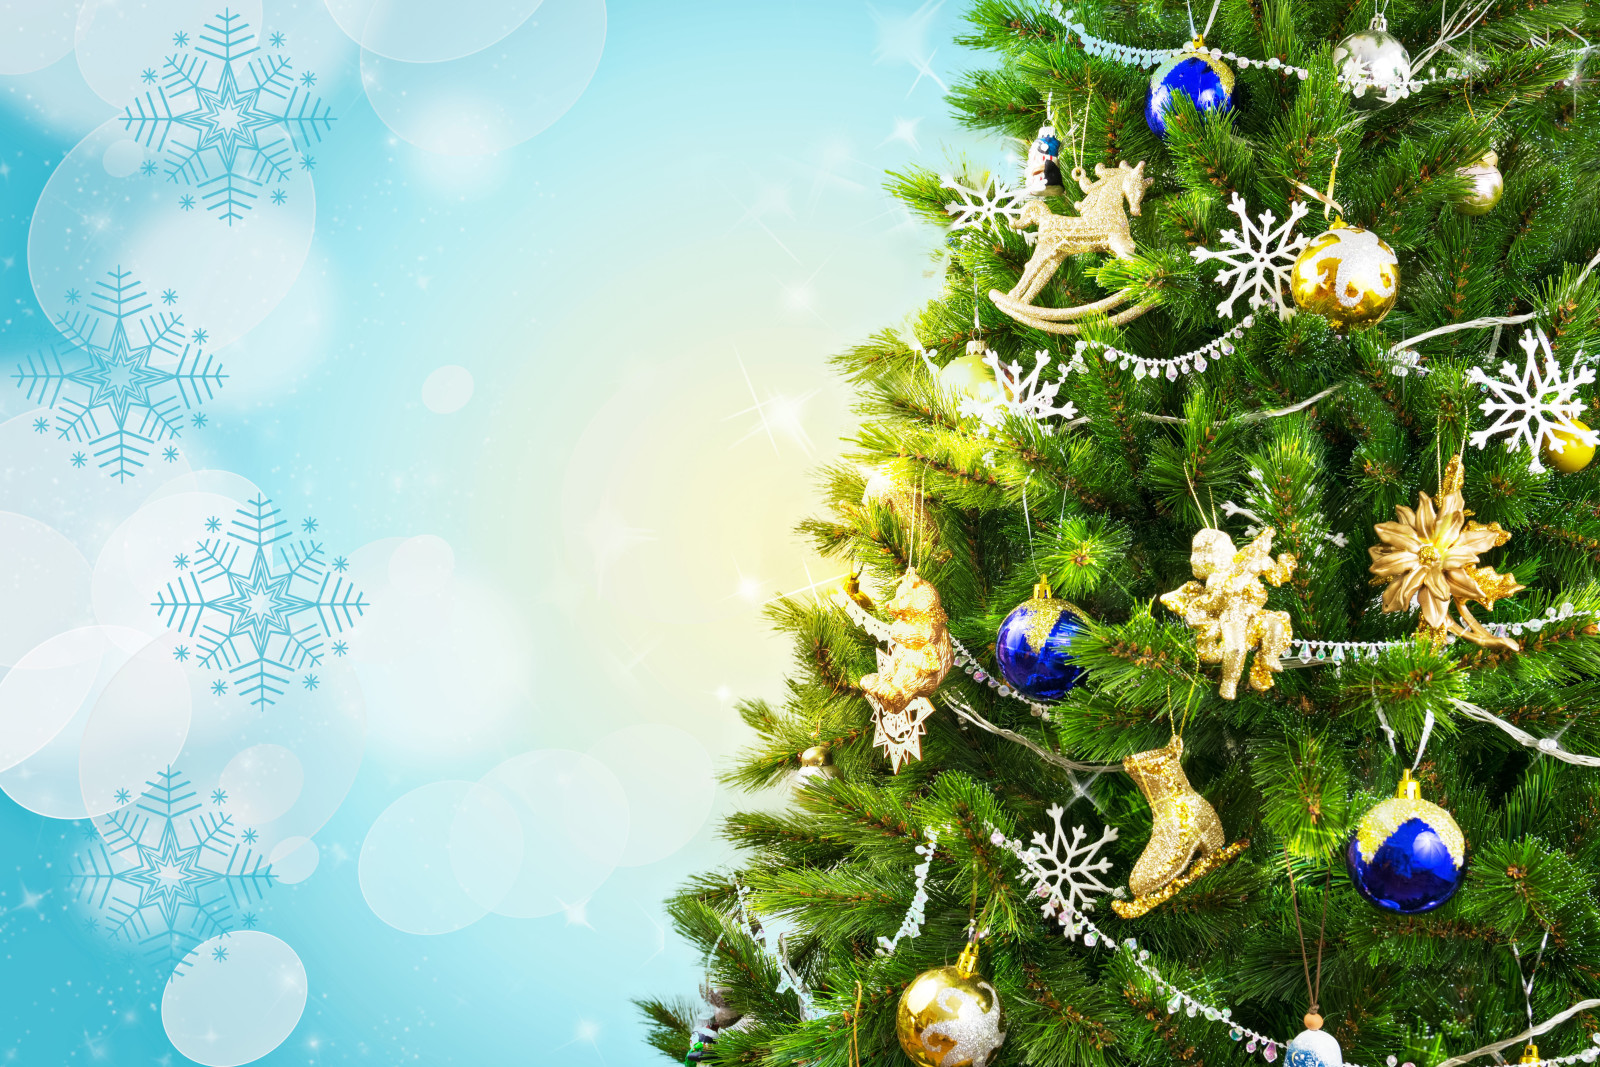 雪片, ボール, 木, 新年, クリスマス, デコレーション, 枝, まぶしさ